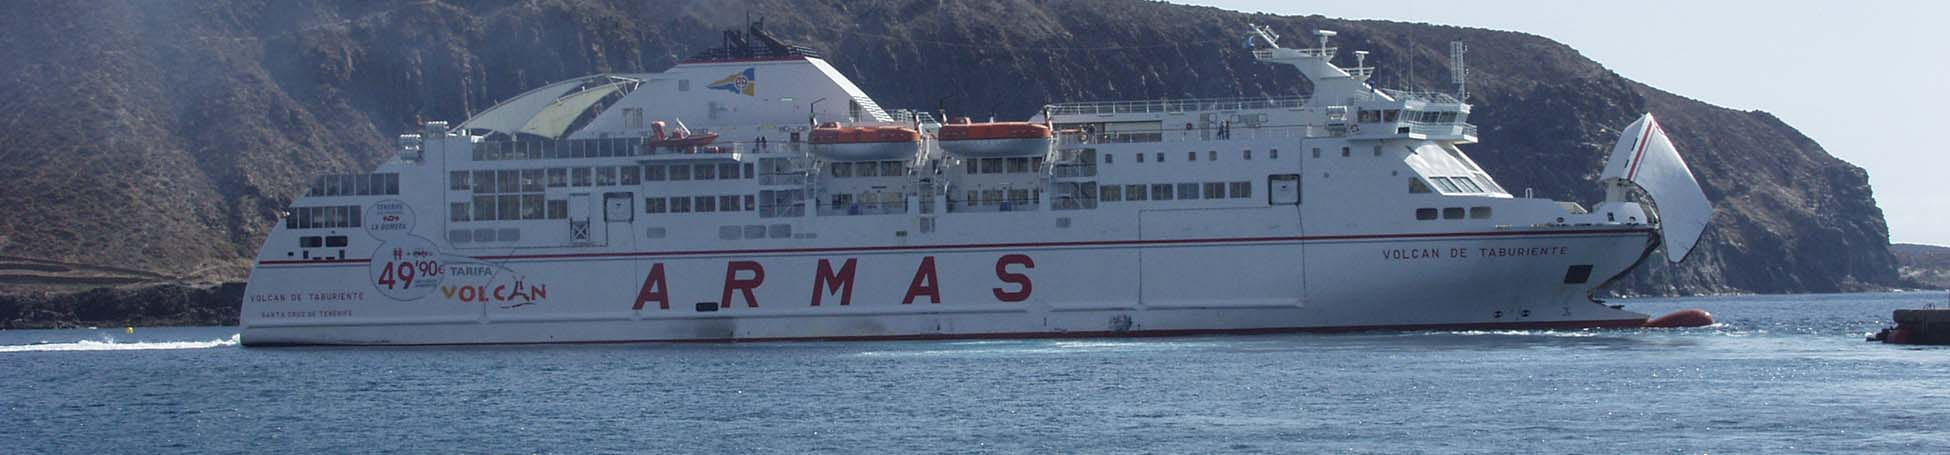 Imagen recurso del puerto de destino Almería para la ruta en ferry Orán - Almería